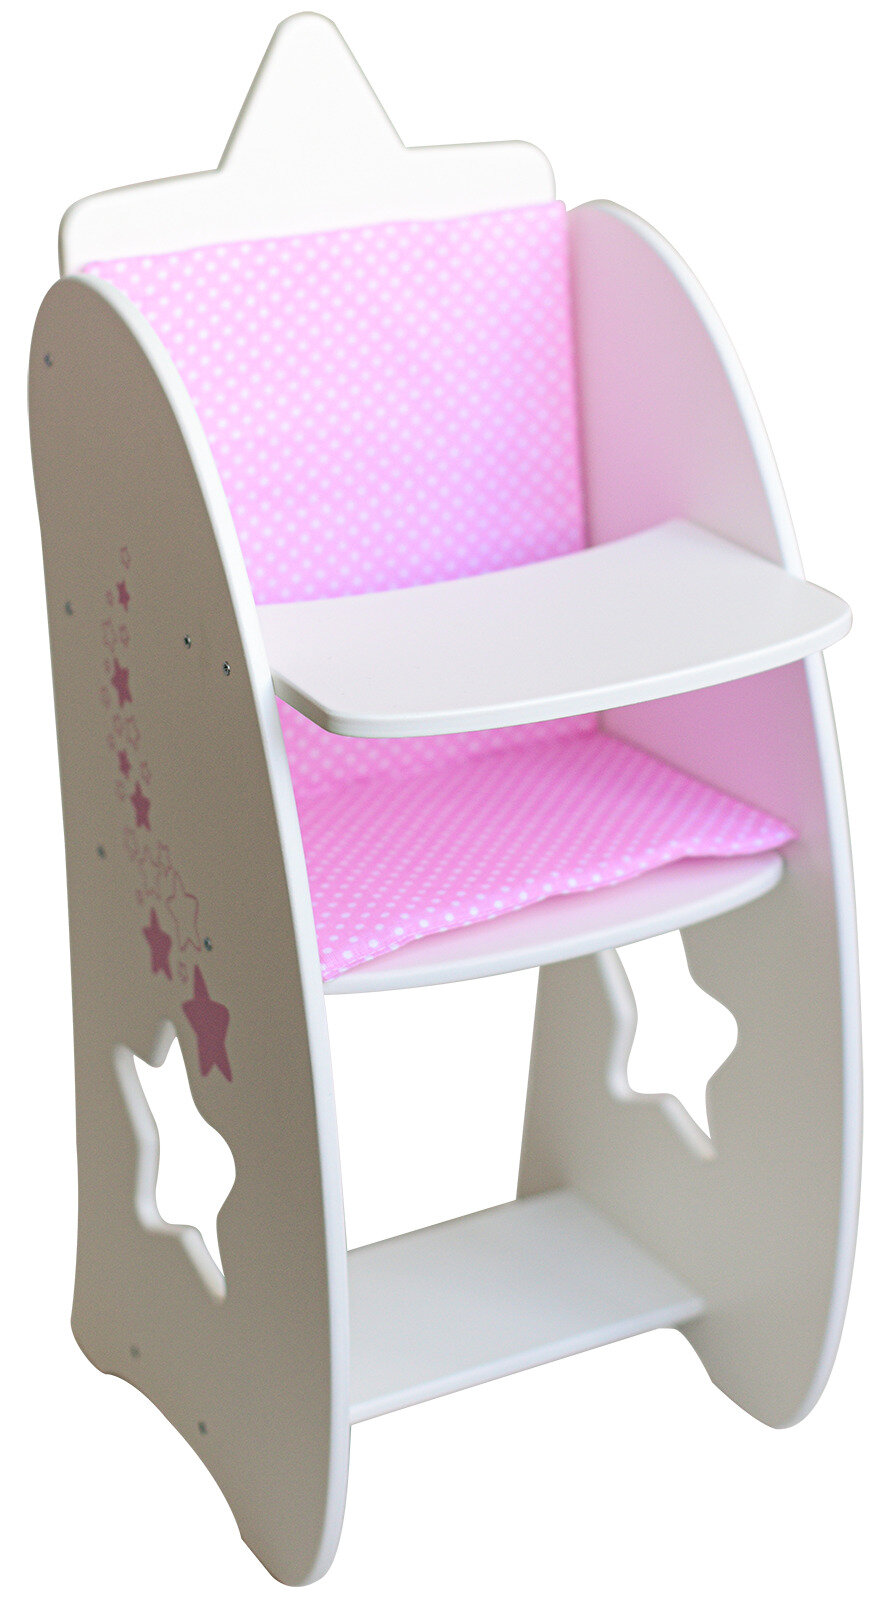 Мебель для кукол деревянная 57 см манюня игрушечный стульчик для кормления кукол / MEGA TOYS аксессуары baby born, reborn, реборн